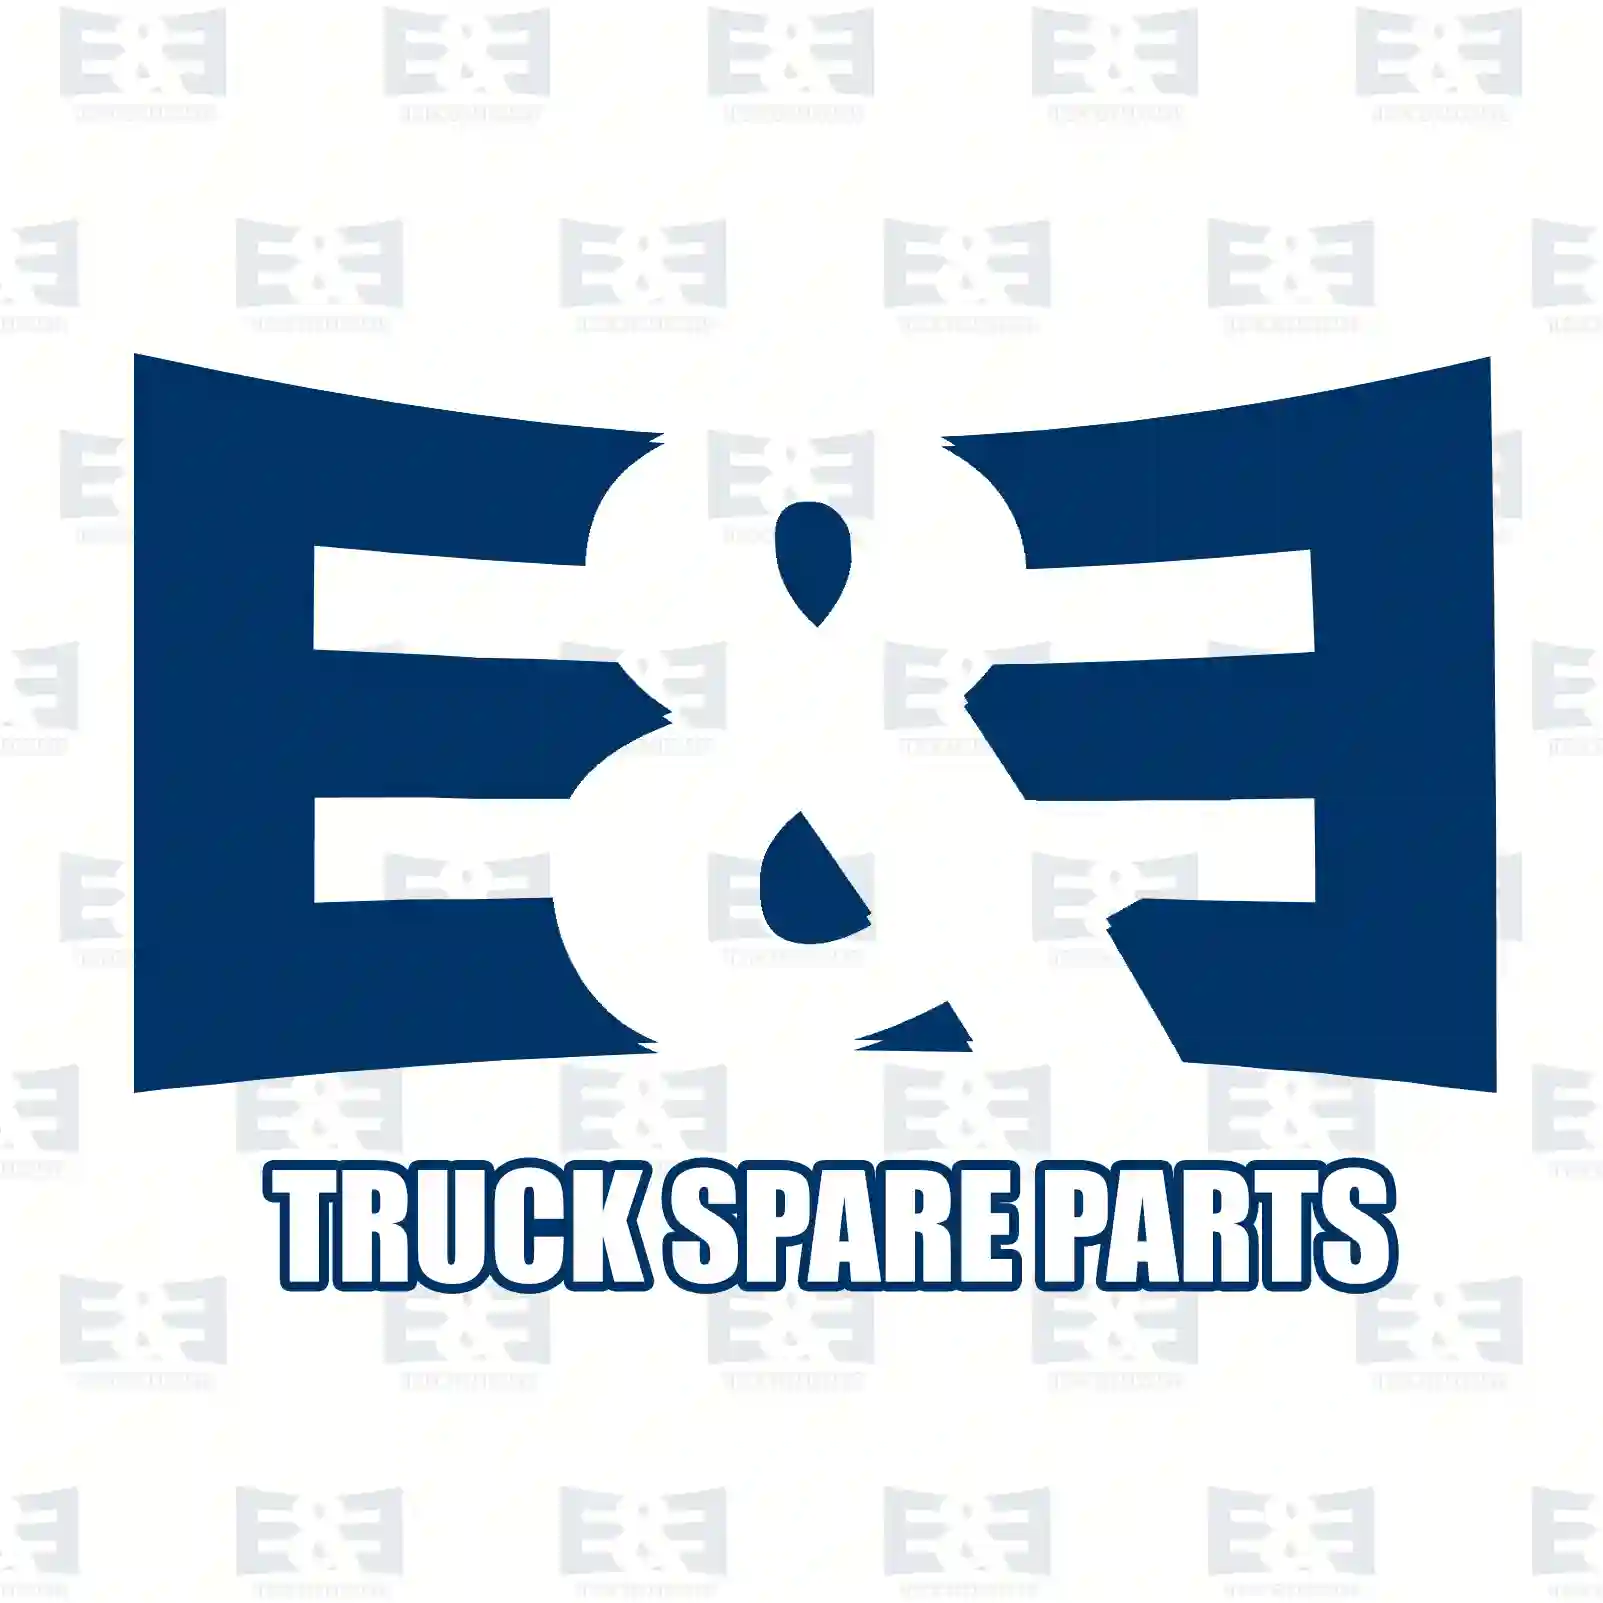 Piston with liner, 2E2208060, 8842090000, 5410302937, 5410303737, 5410303937, 5410304117, 5410304217, 5410304437, 5410304837, ZG01906-0008 ||  2E2208060 E&E Truck Spare Parts | Truck Spare Parts, Auotomotive Spare Parts Piston with liner, 2E2208060, 8842090000, 5410302937, 5410303737, 5410303937, 5410304117, 5410304217, 5410304437, 5410304837, ZG01906-0008 ||  2E2208060 E&E Truck Spare Parts | Truck Spare Parts, Auotomotive Spare Parts